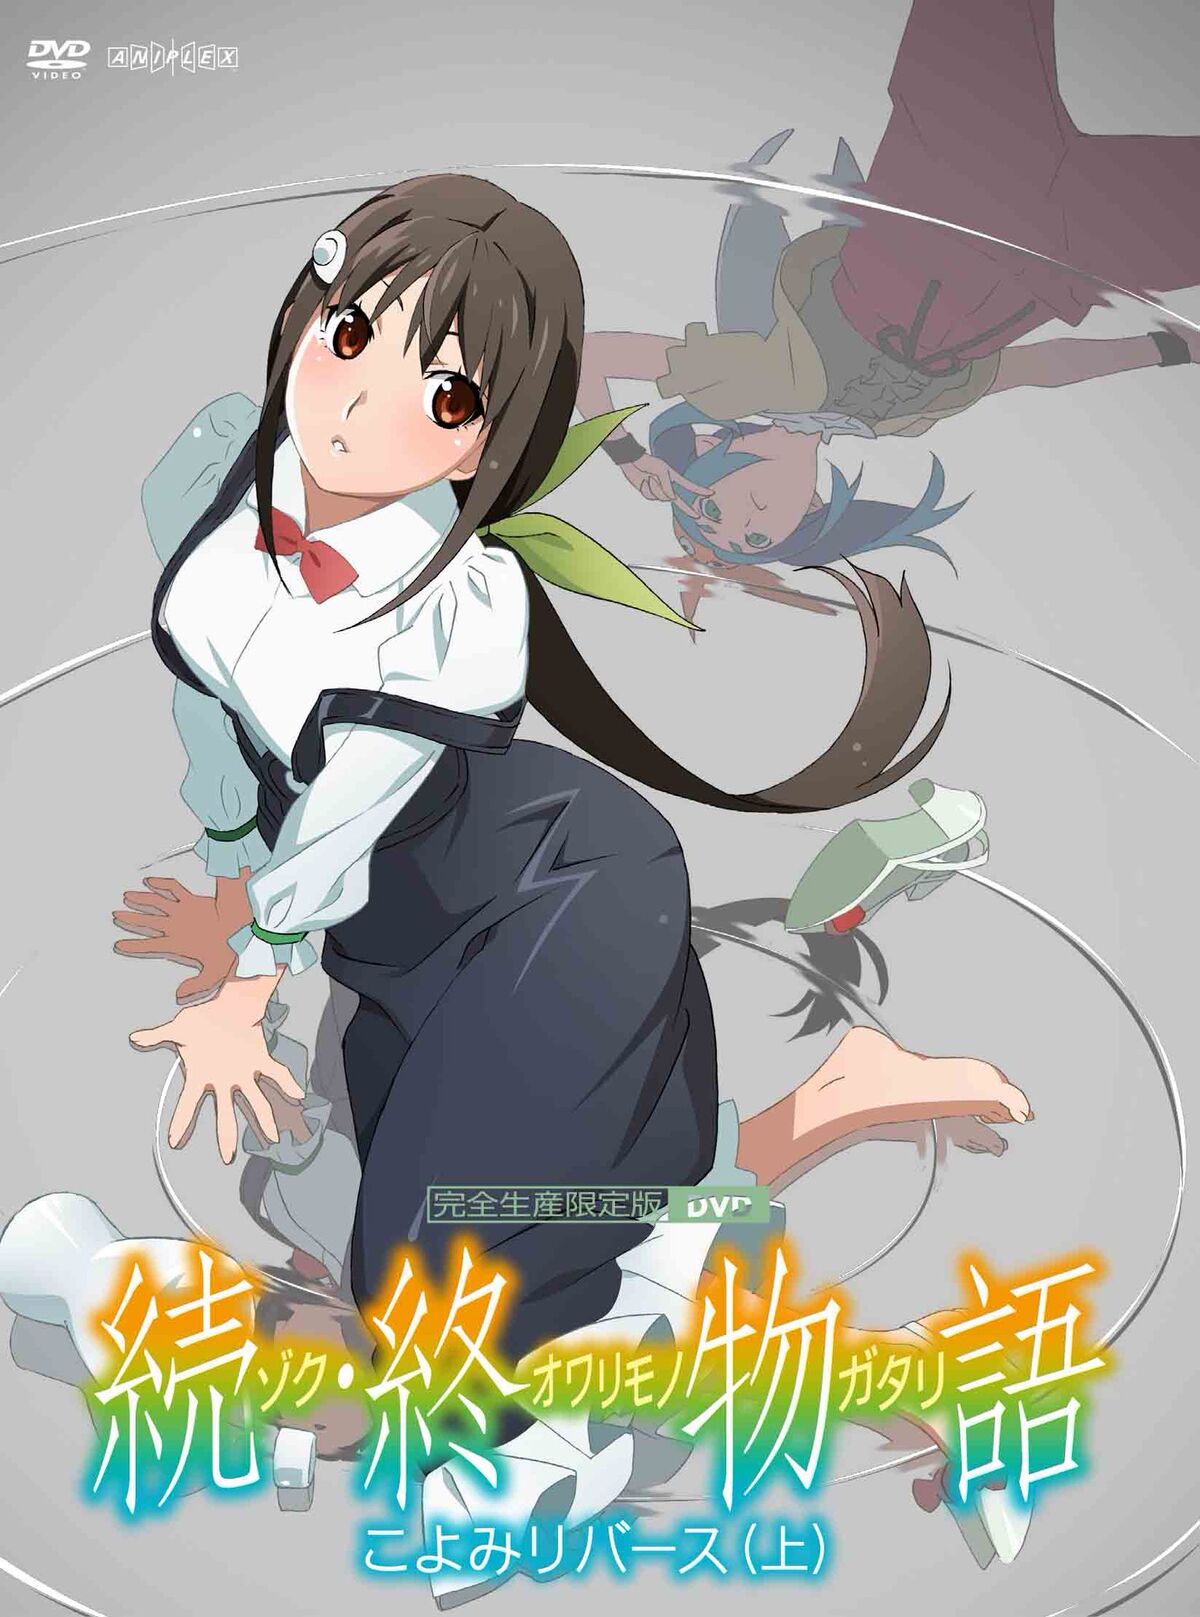 Daisuki To Stream Owarimonogatari, HackaDoll, 2 Others - Anime Herald